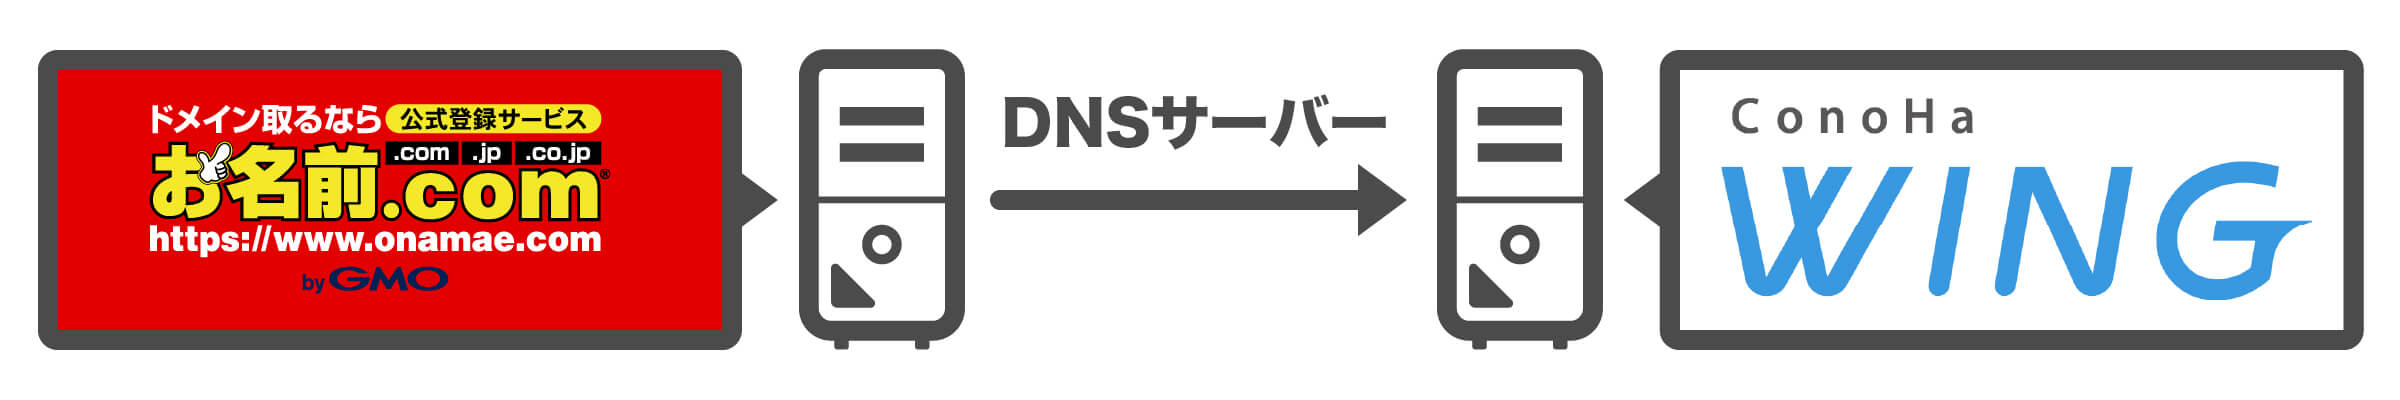 DNS（ネームサーバー）とは